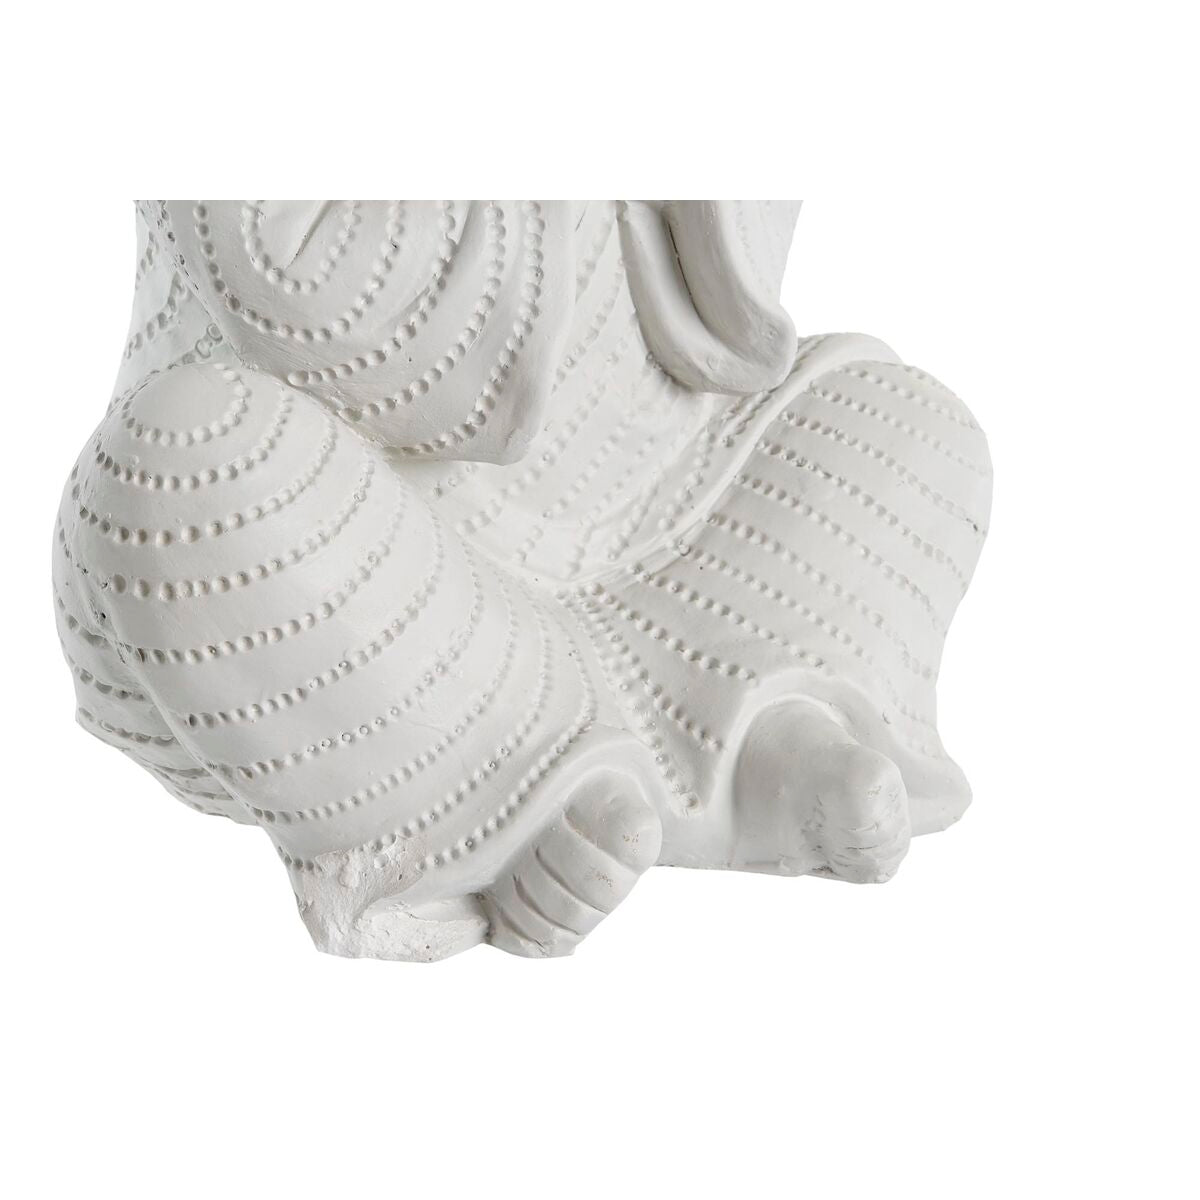 Figurine Décorative Design Moine Oriental Finition vieillie en Magnésium Blanc (24 x 22 x 39 cm) (3 Unités)